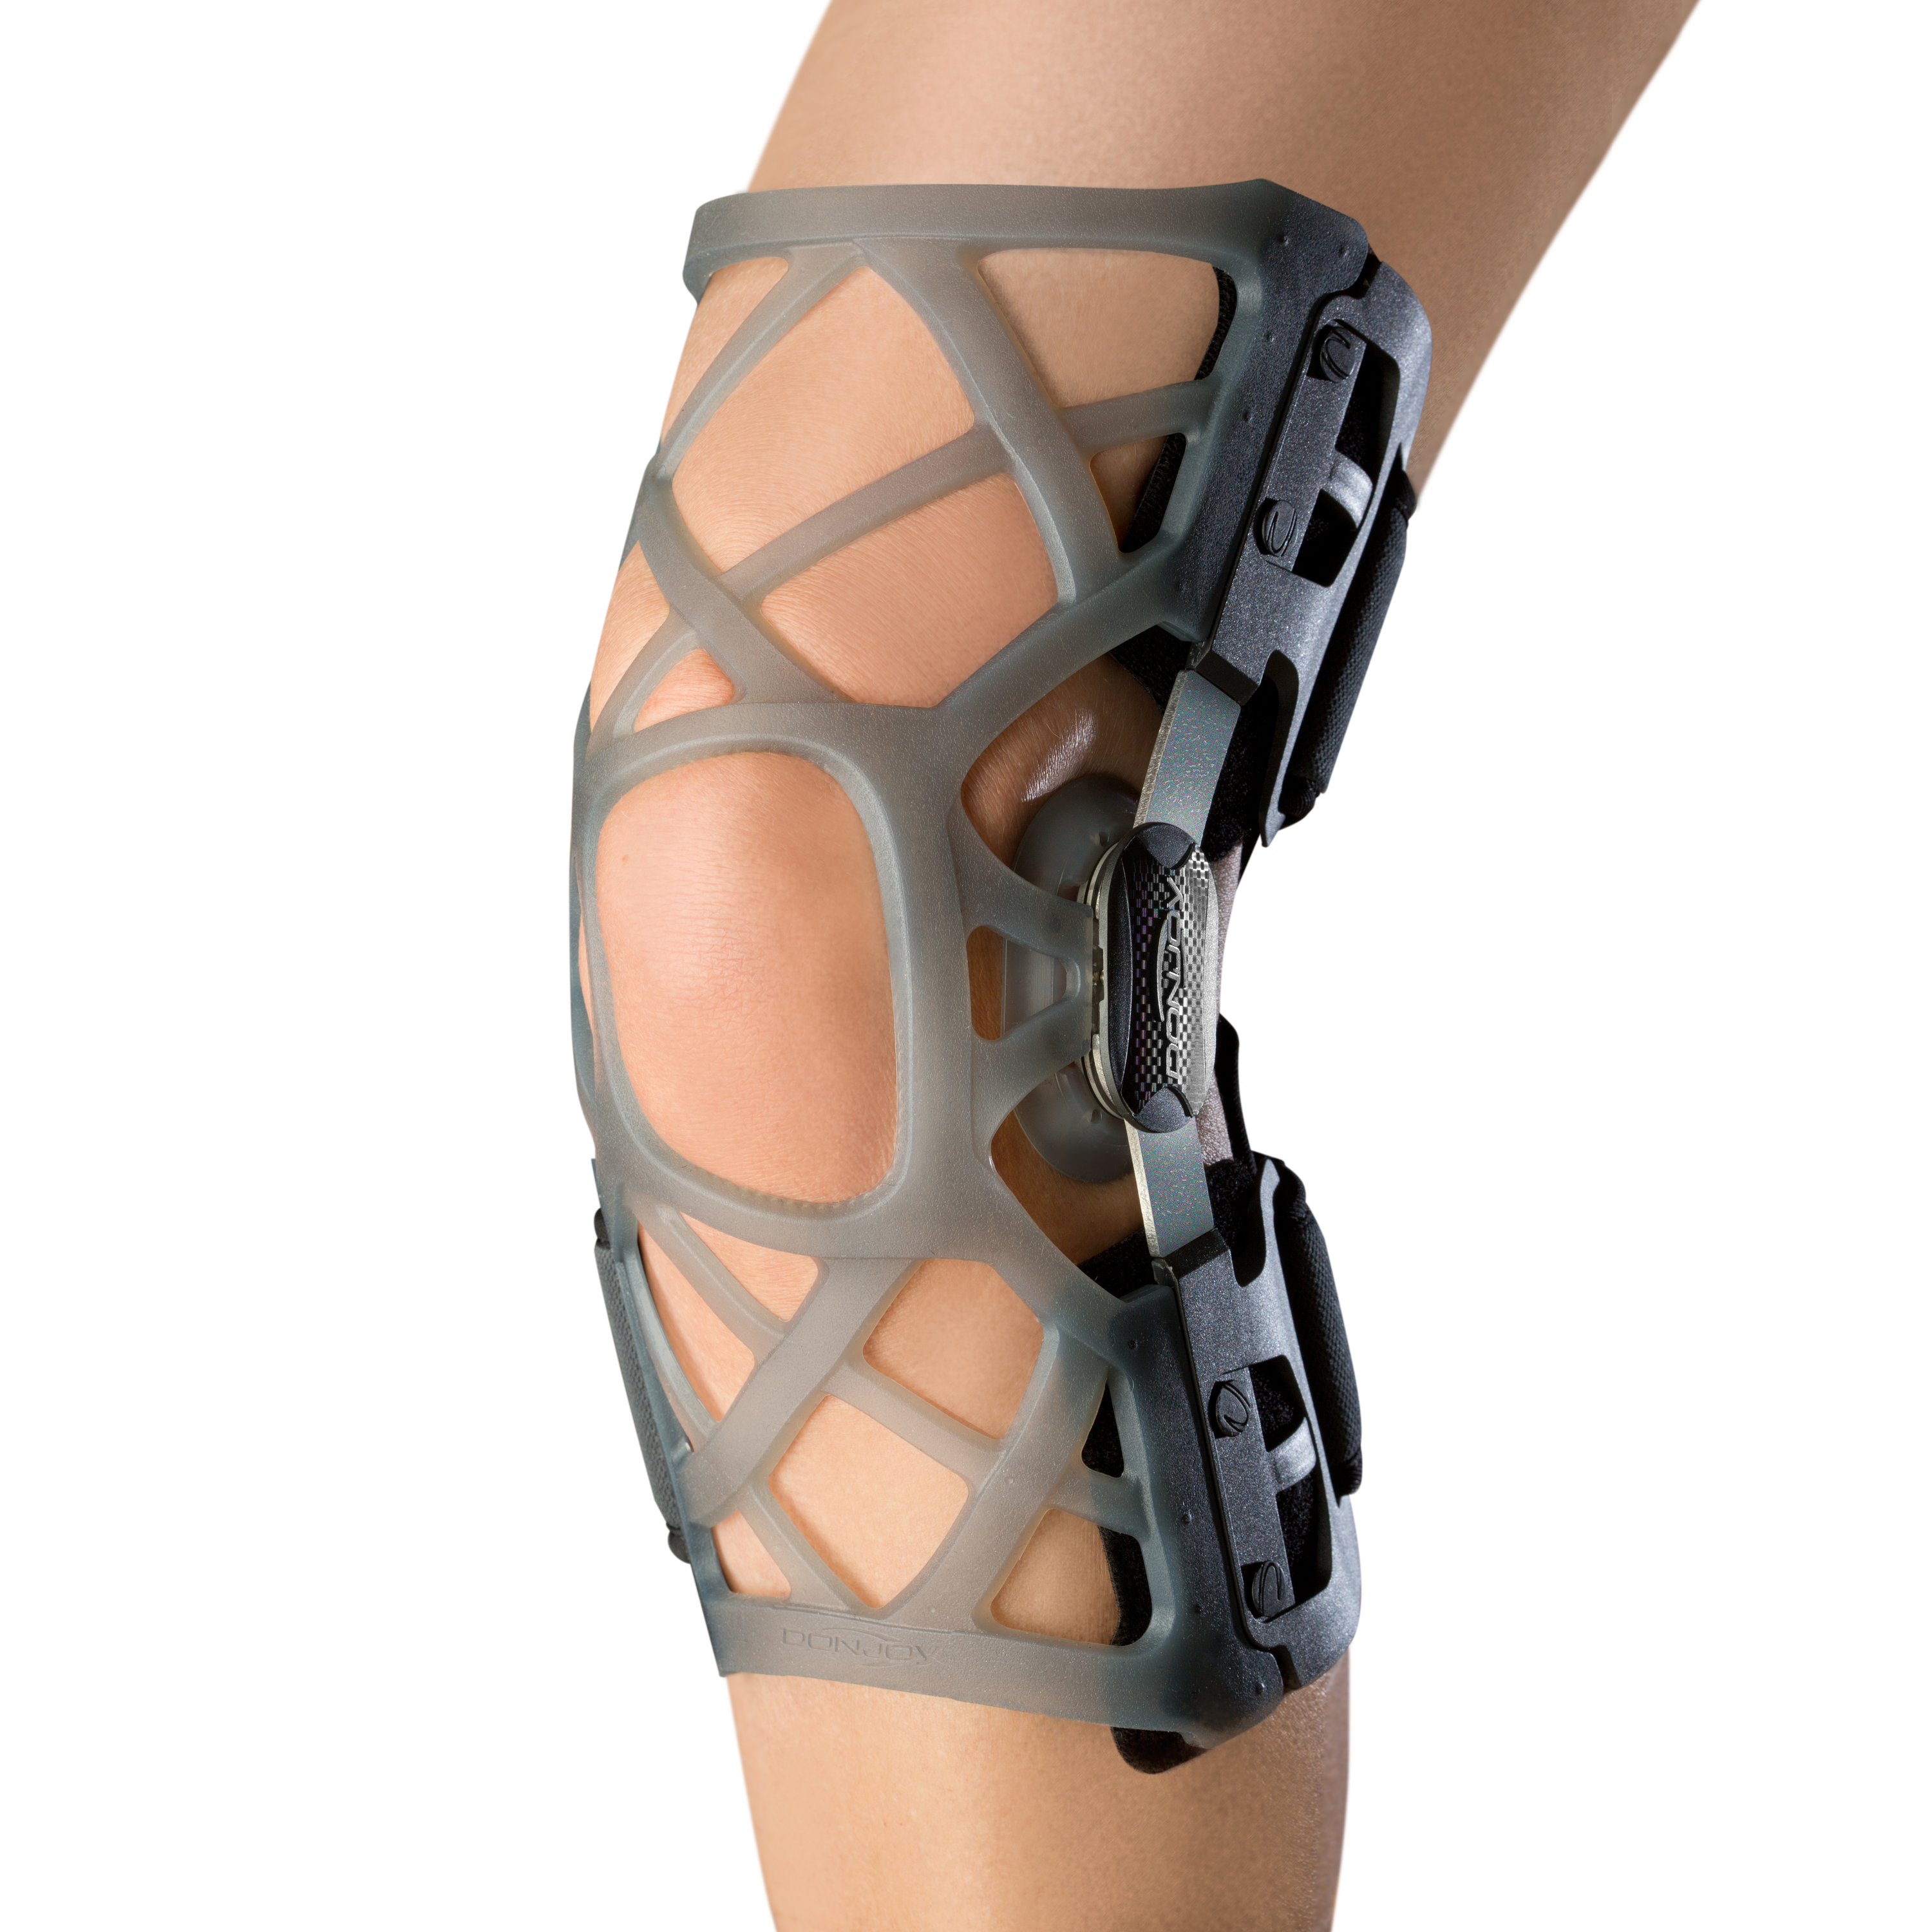 Zusatzbild DONJOY® Matrix OA ohne Strumpf am linken Bein, Knieorthese zur Entlastung eines Kompartiments nach dem 3-Punkt-Prinzip